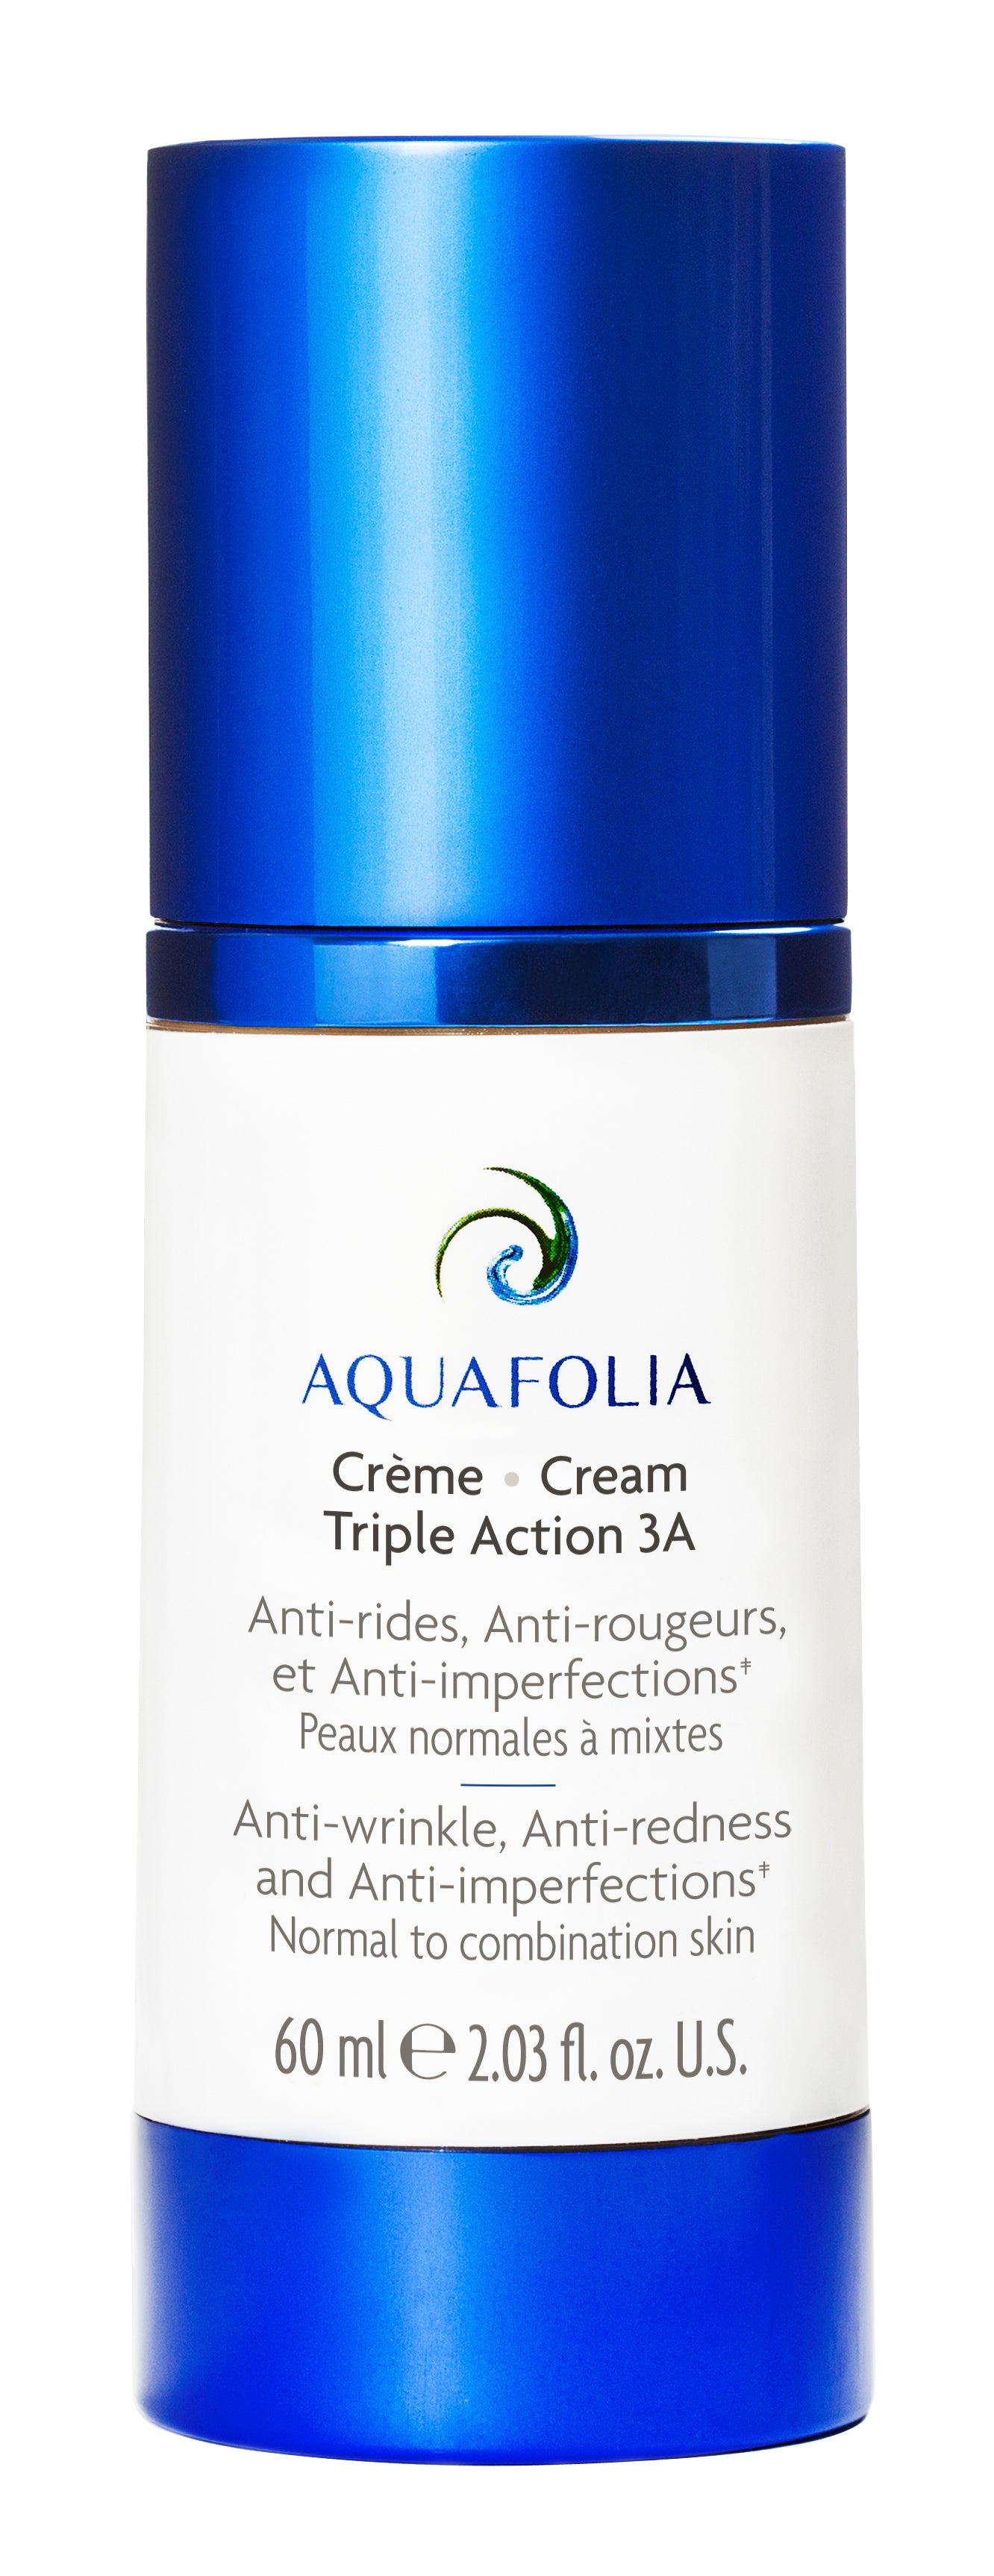 Aquafolia- Triple Action 3A Cream- Triple Action 3A Concept